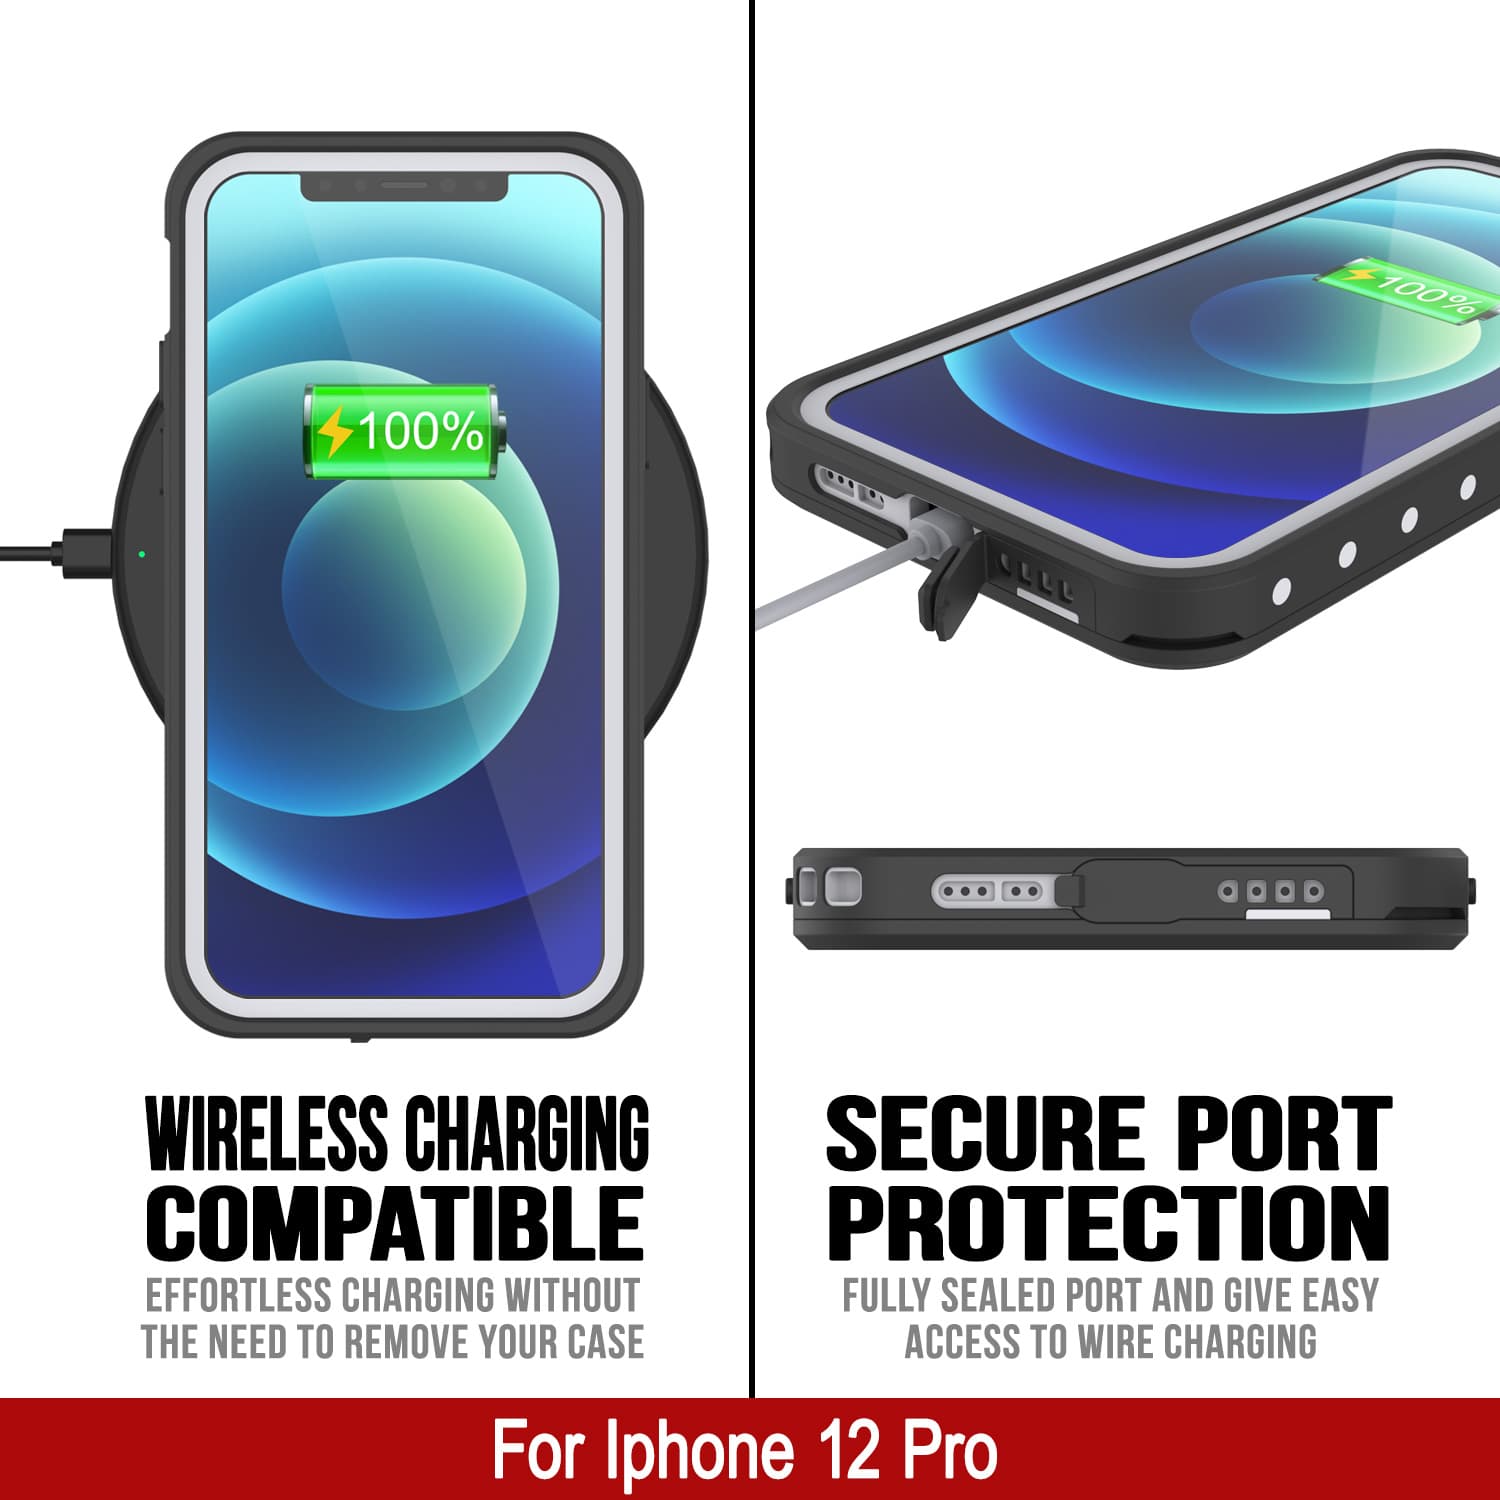 iPhone 12 Pro Waterproof IP68 Case, Punkcase [White] [StudStar Series] [Slim Fit] [Dirtproof]